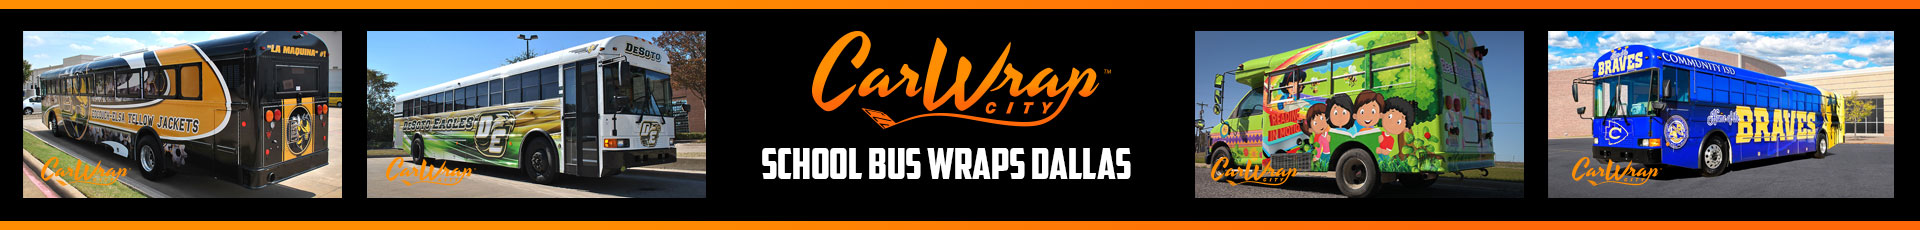 School Bus Wraps Dallas